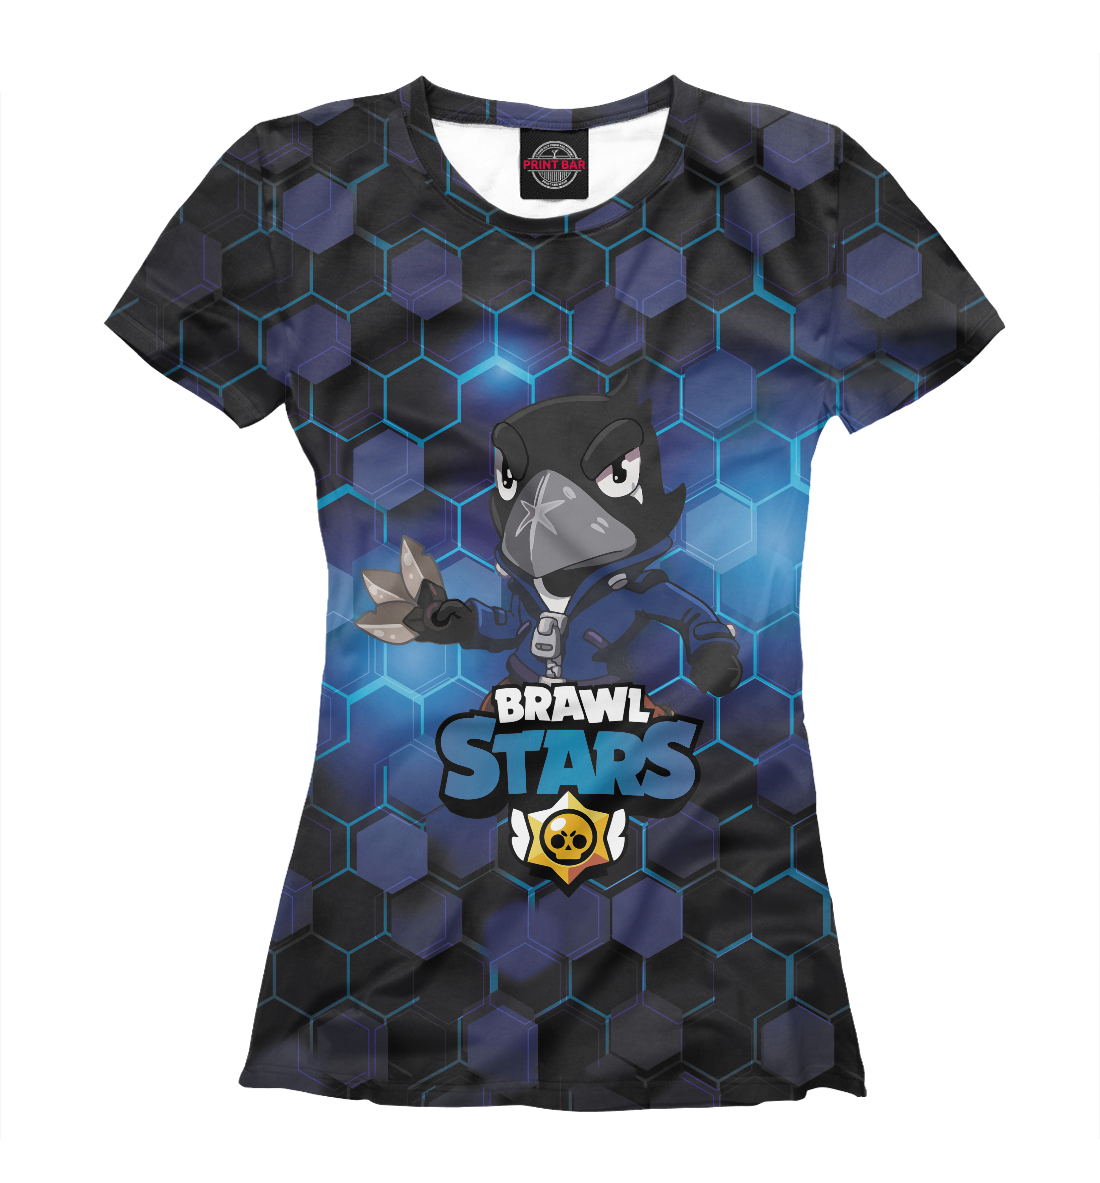 Футболка Brawl Stars Crow для девочек, артикул: RPG-654933-fut-1mp